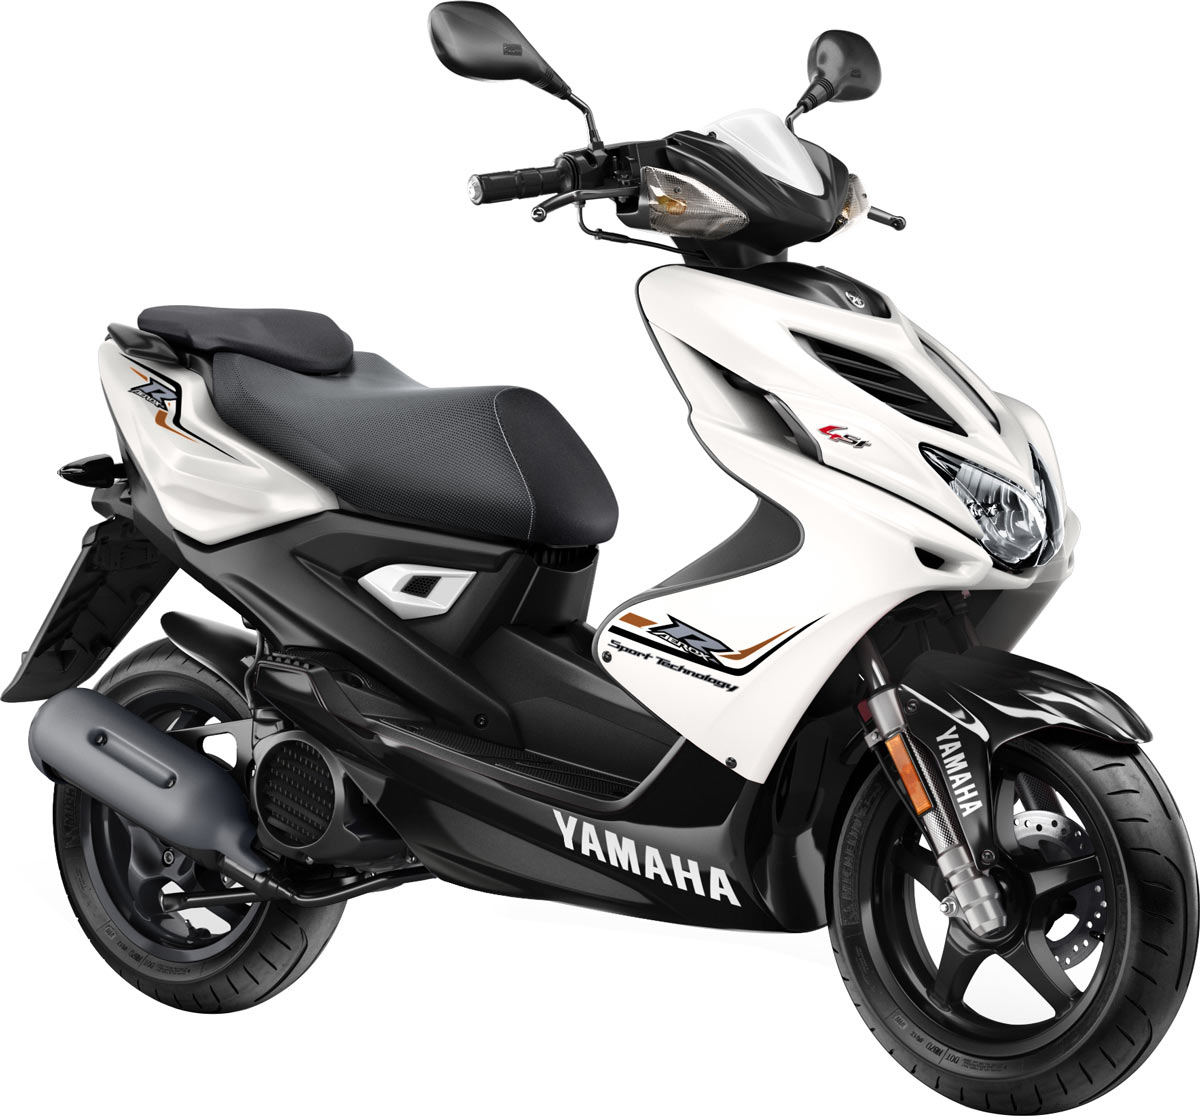 Pour 2016, les Yamaha Aerox R et 4 sont disponibles dans cette déco blanche